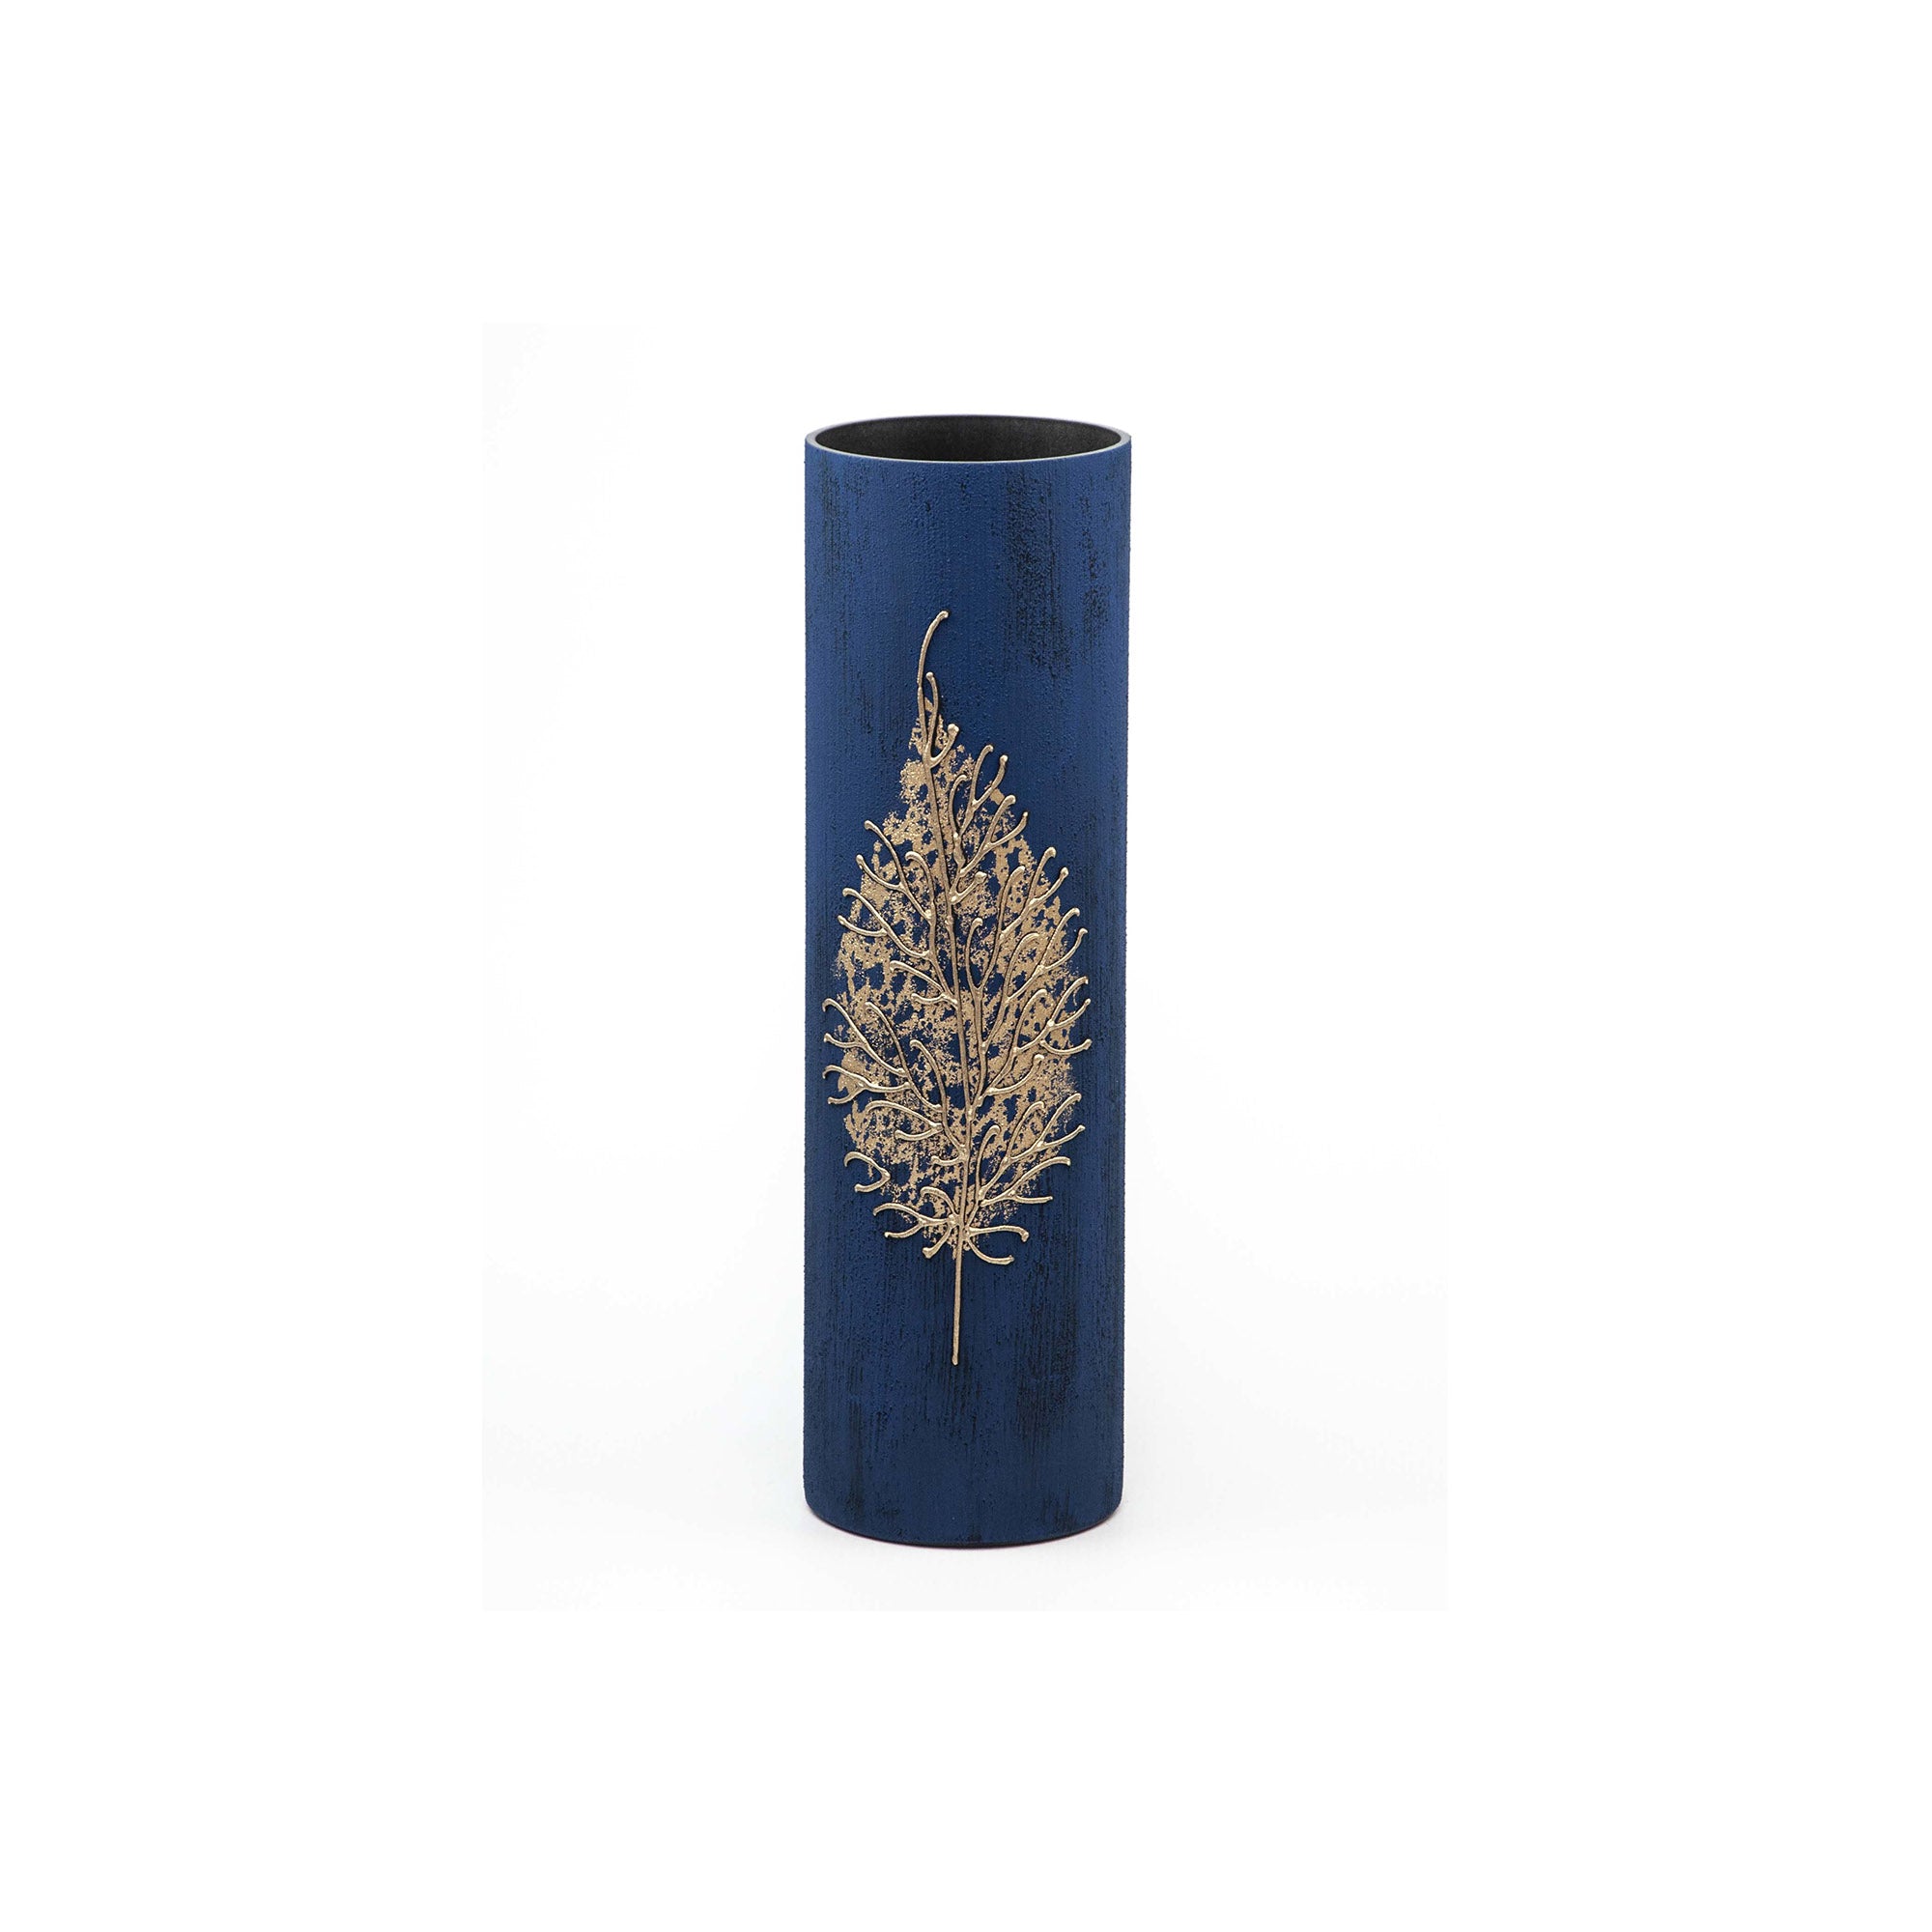 Gold leaf decorated glass vase | Glass vase for flowers | Cylinder Vase | Interior Design | Home Decor | Large Floor Vase 16 inch